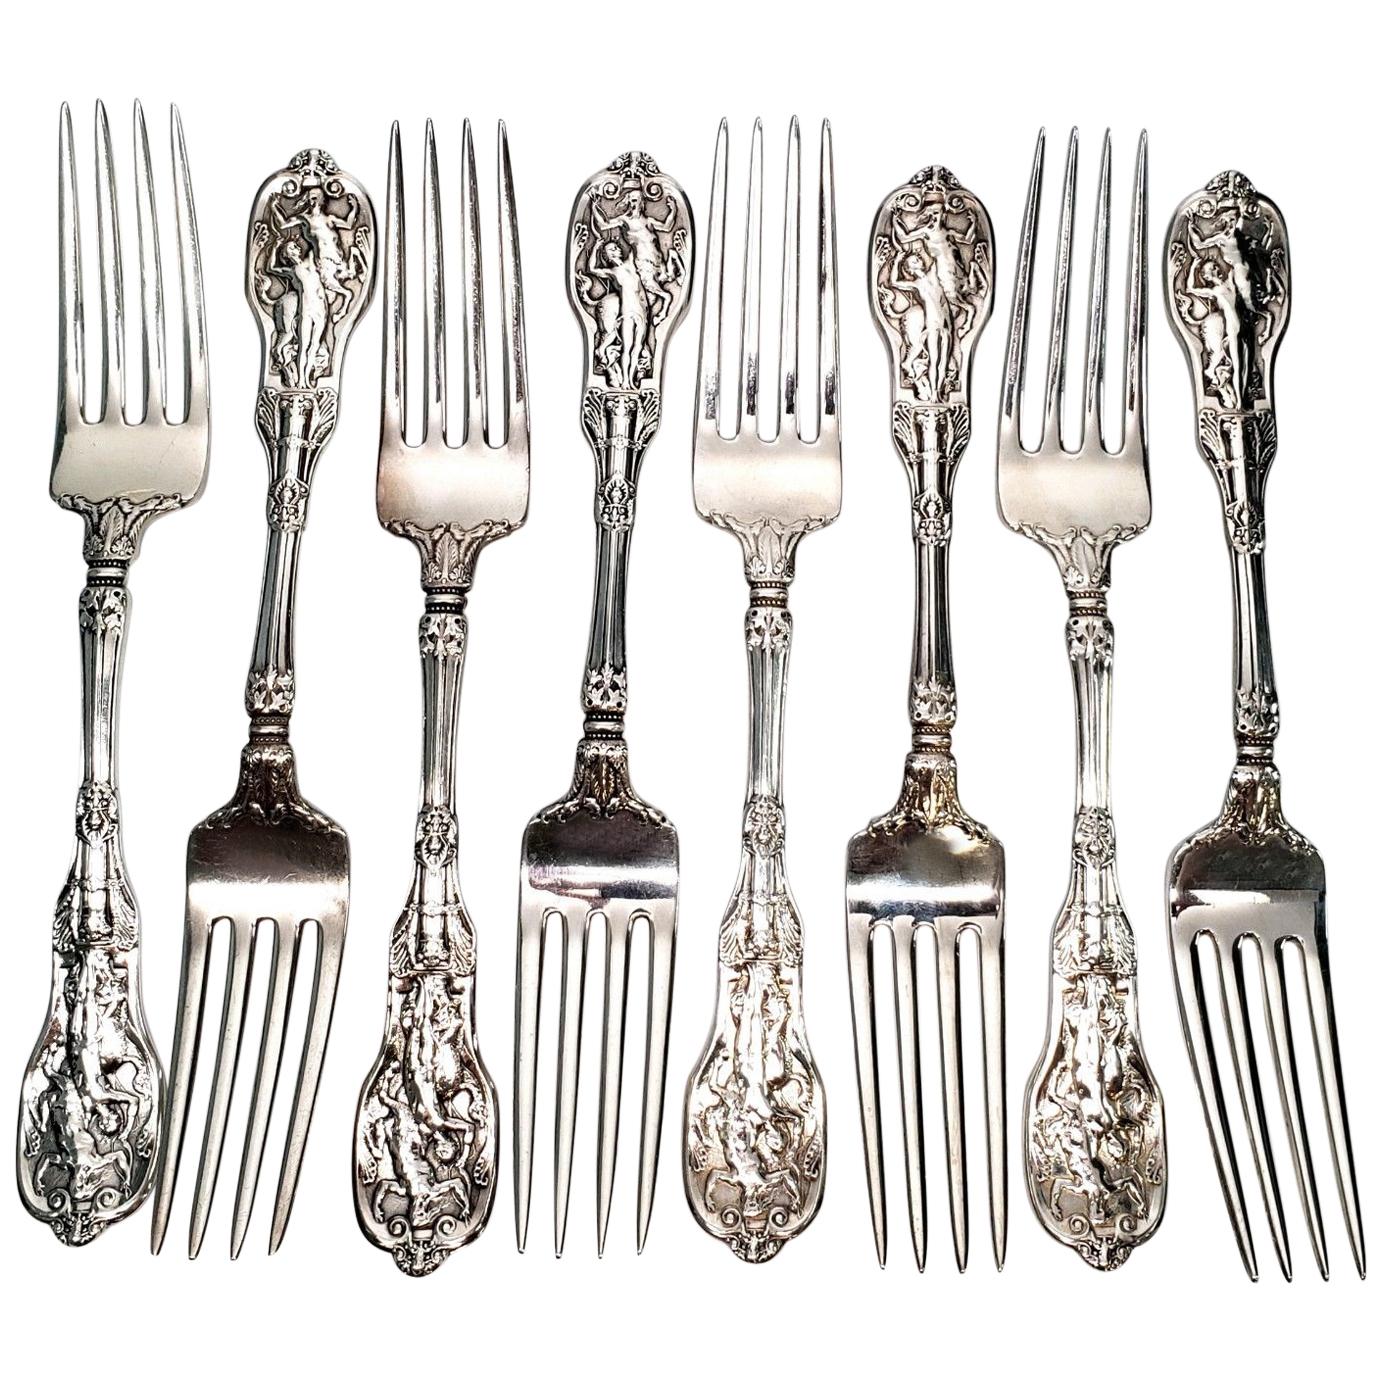 Set of 8 Gorham Mythologique Sterling Silver Forks, Multi Monograms